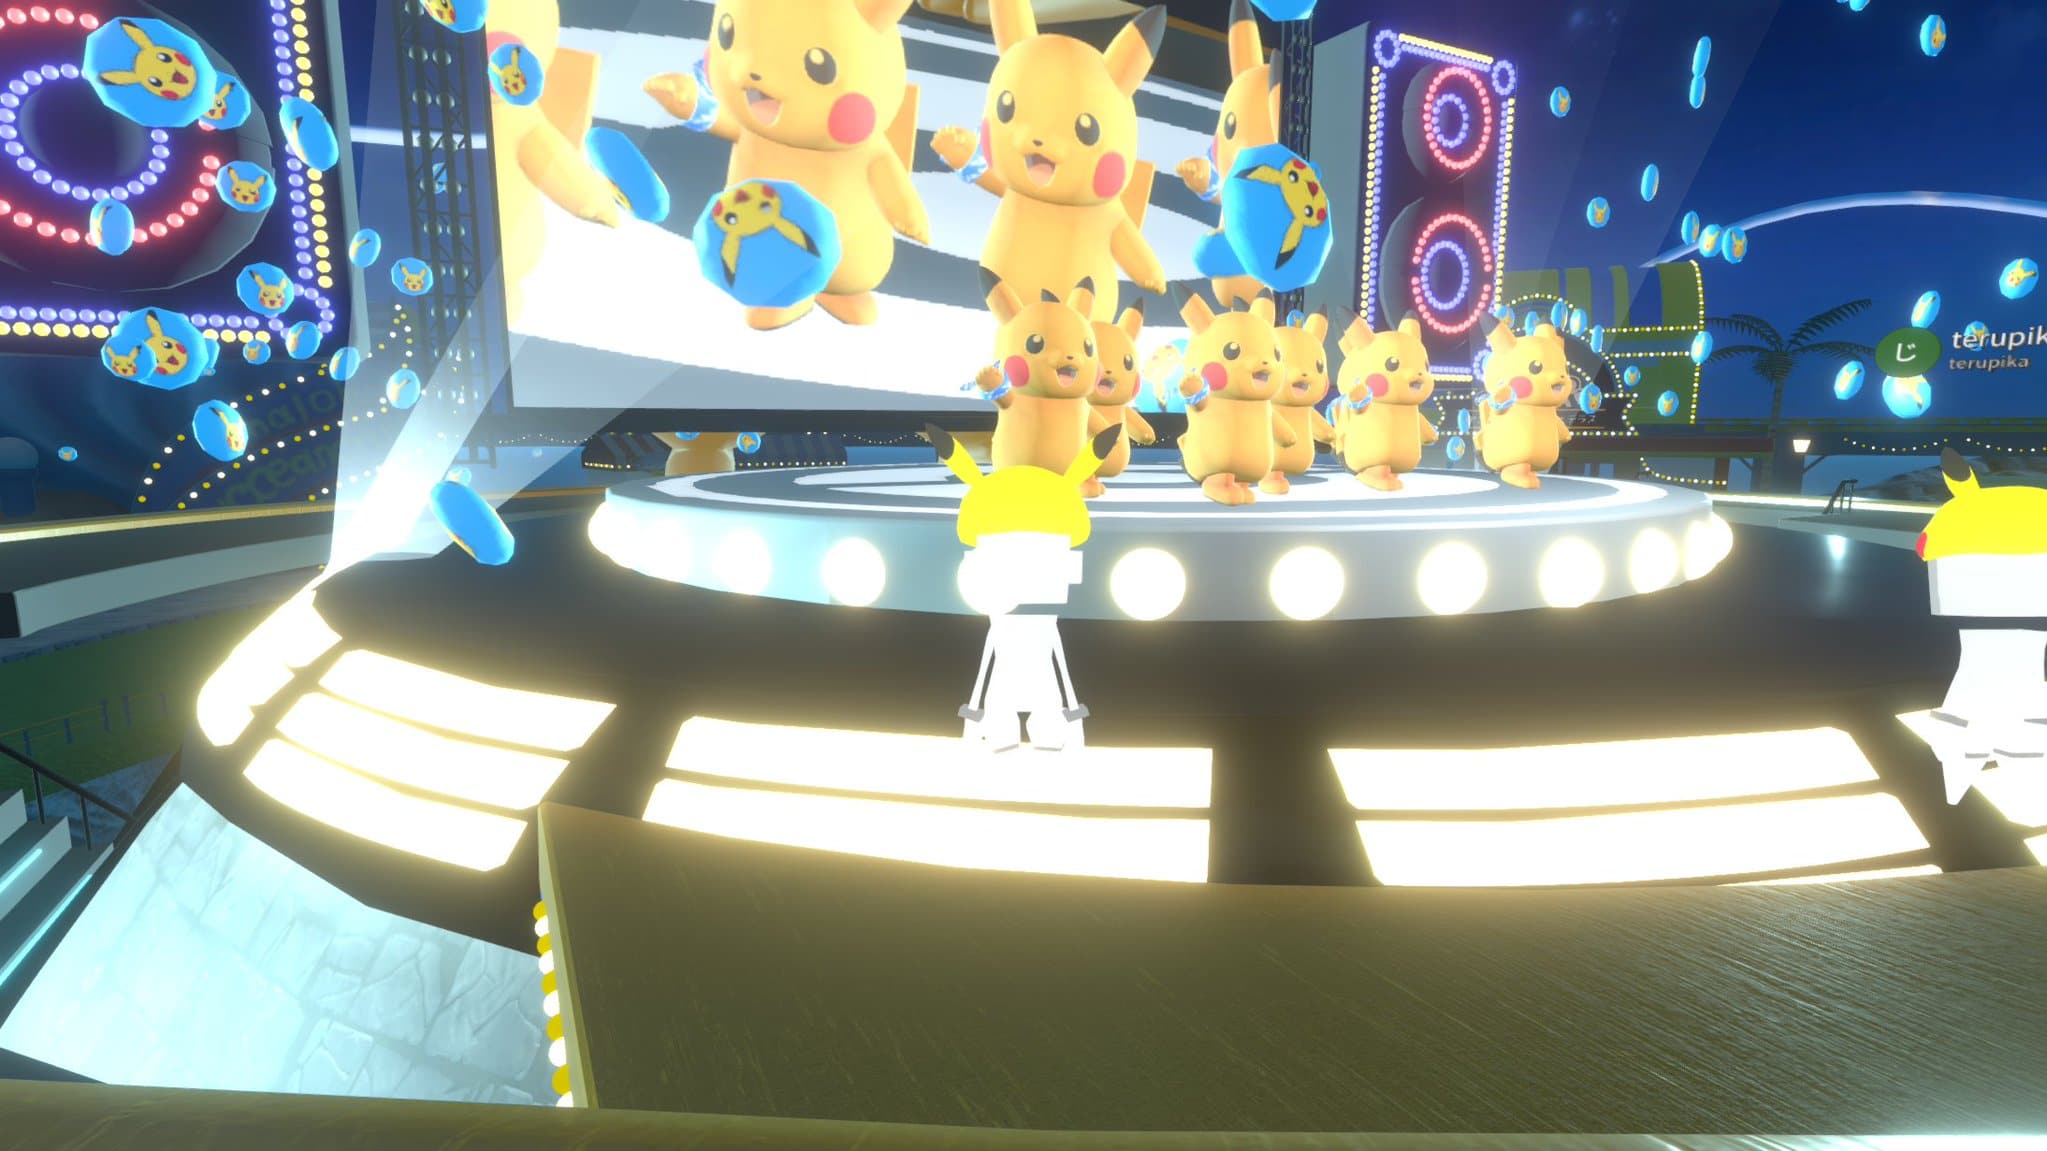 Así ha sido el Pikachu Virtual Dance Show de hoy en el Pokémon Virtual Fest